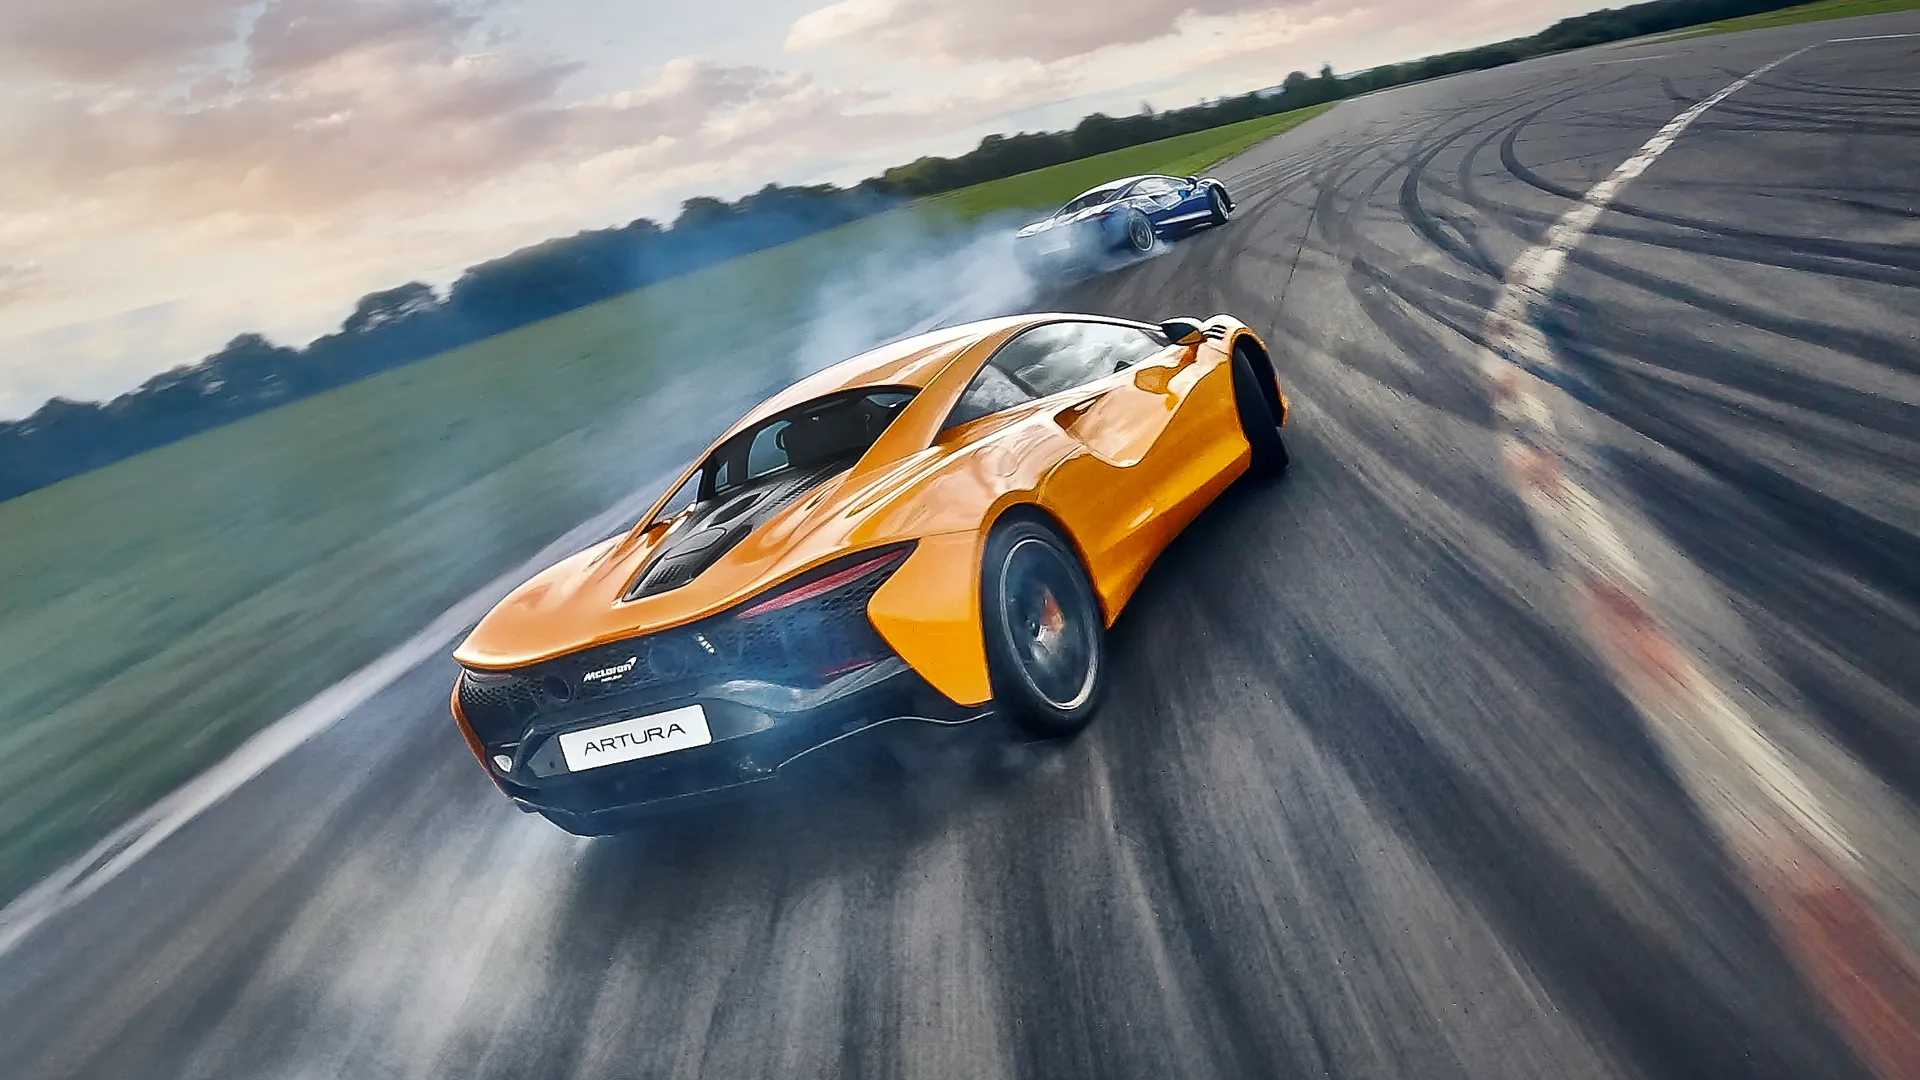 Este vídeo se une a las celebraciones del sexagésimo aniversario de McLaren